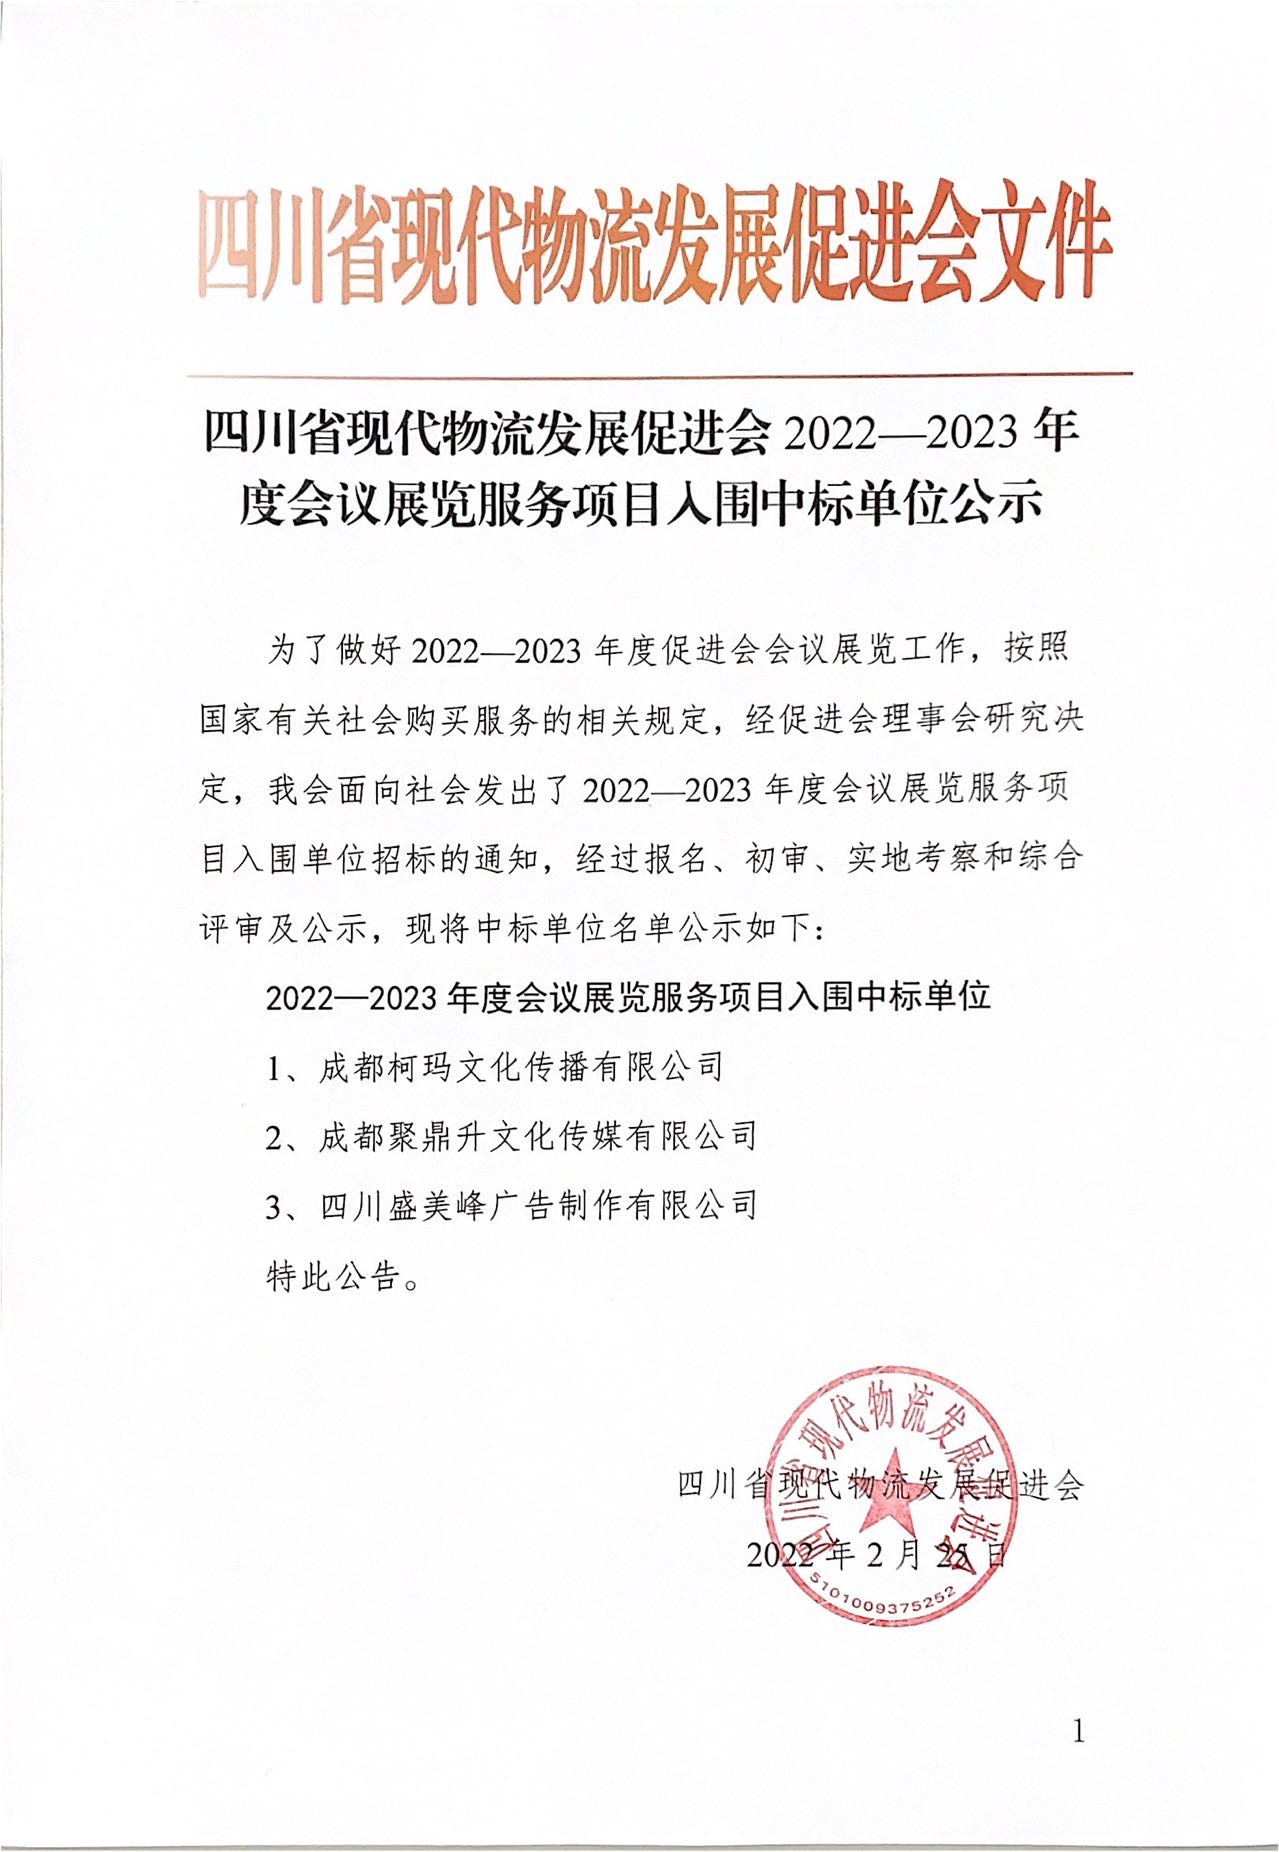 四川省现代物流发展促进会2022-2023年度会议展览服务项目入围中标单位公示